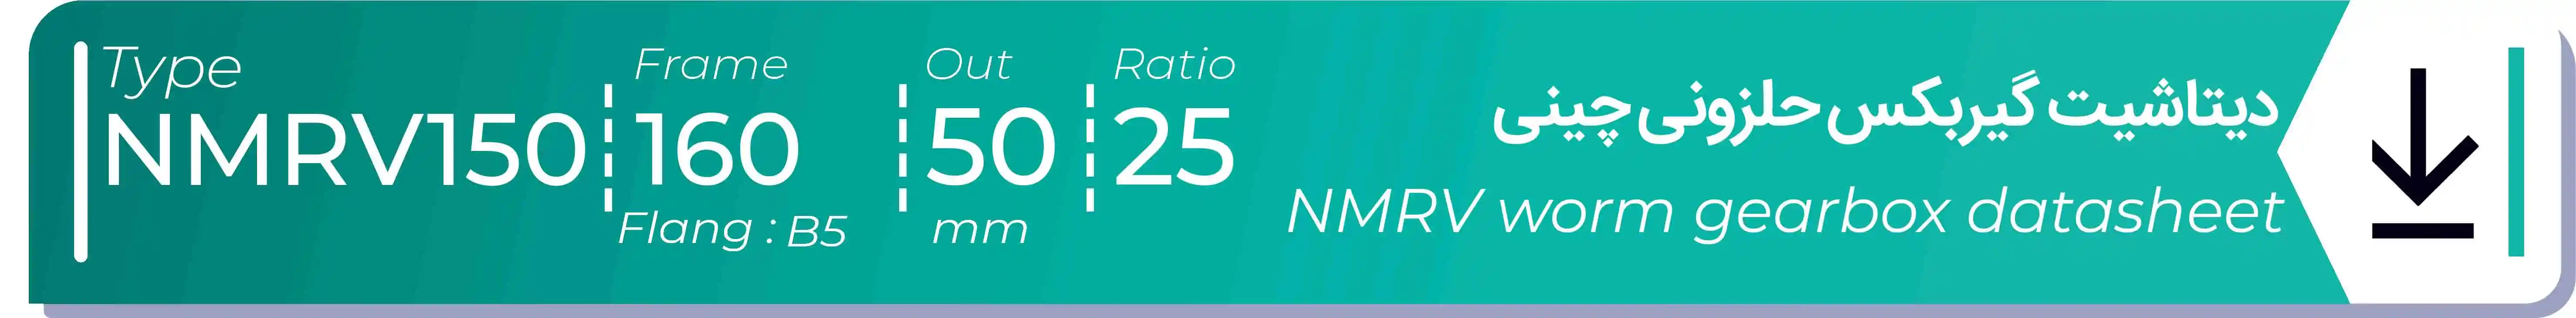  دیتاشیت و مشخصات فنی گیربکس حلزونی چینی   NMRV150  -  با خروجی 50- میلی متر و نسبت25 و فریم 160